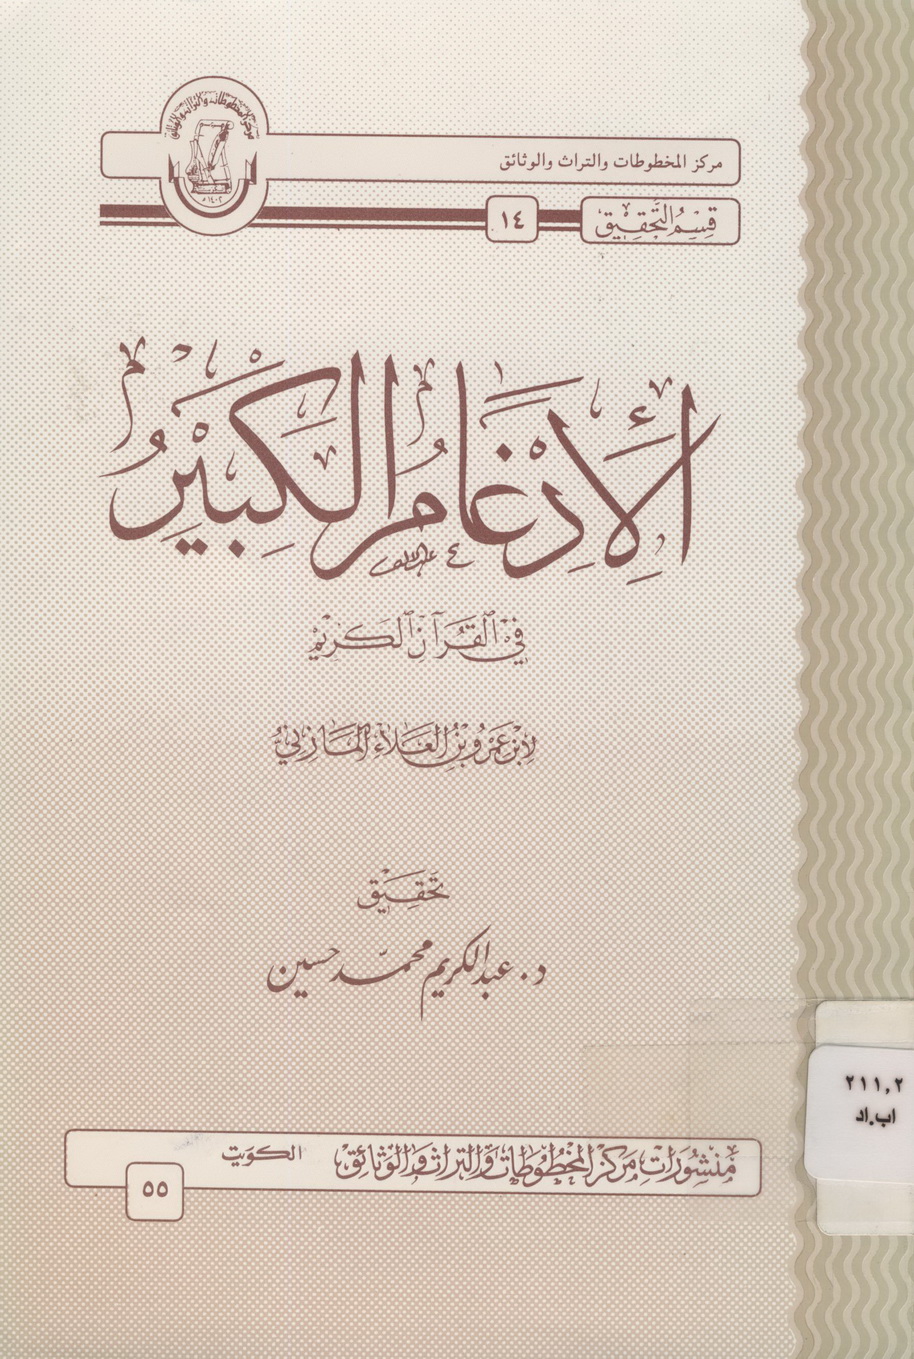 تحميل كتاب الإدغام الكبير - أبو عمرو البصري (ت عبد الكريم حسين) لـِ: الإمام أبو عمرو بن العلاء بن عمار المازني البصري (ت 154)